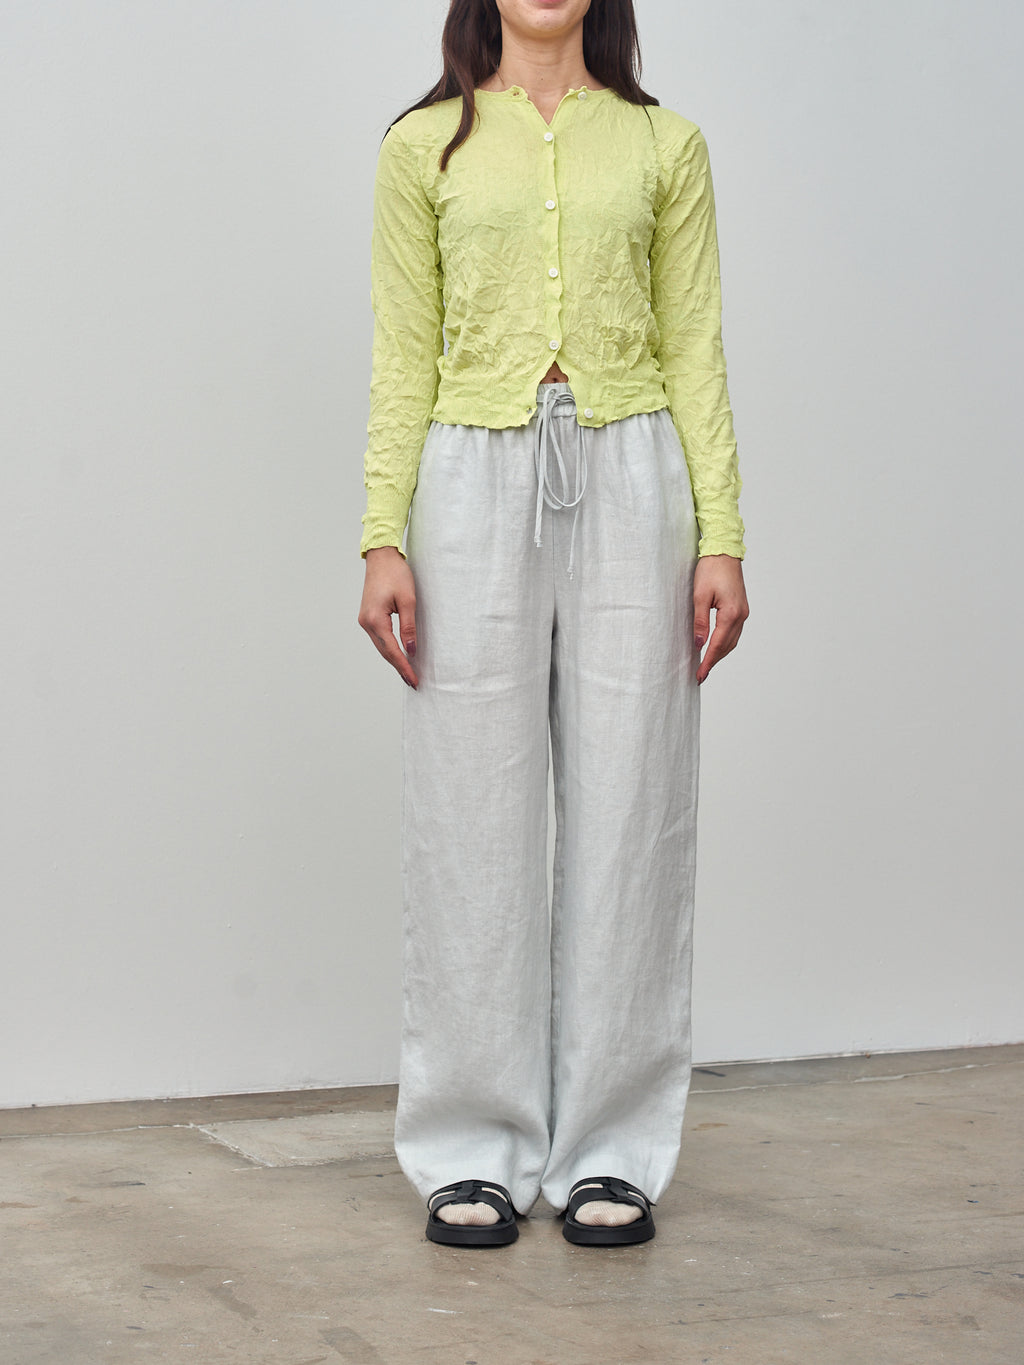 Namu Shop - Sayaka Davis Crinkled Knit Cardigan - Acid Lime